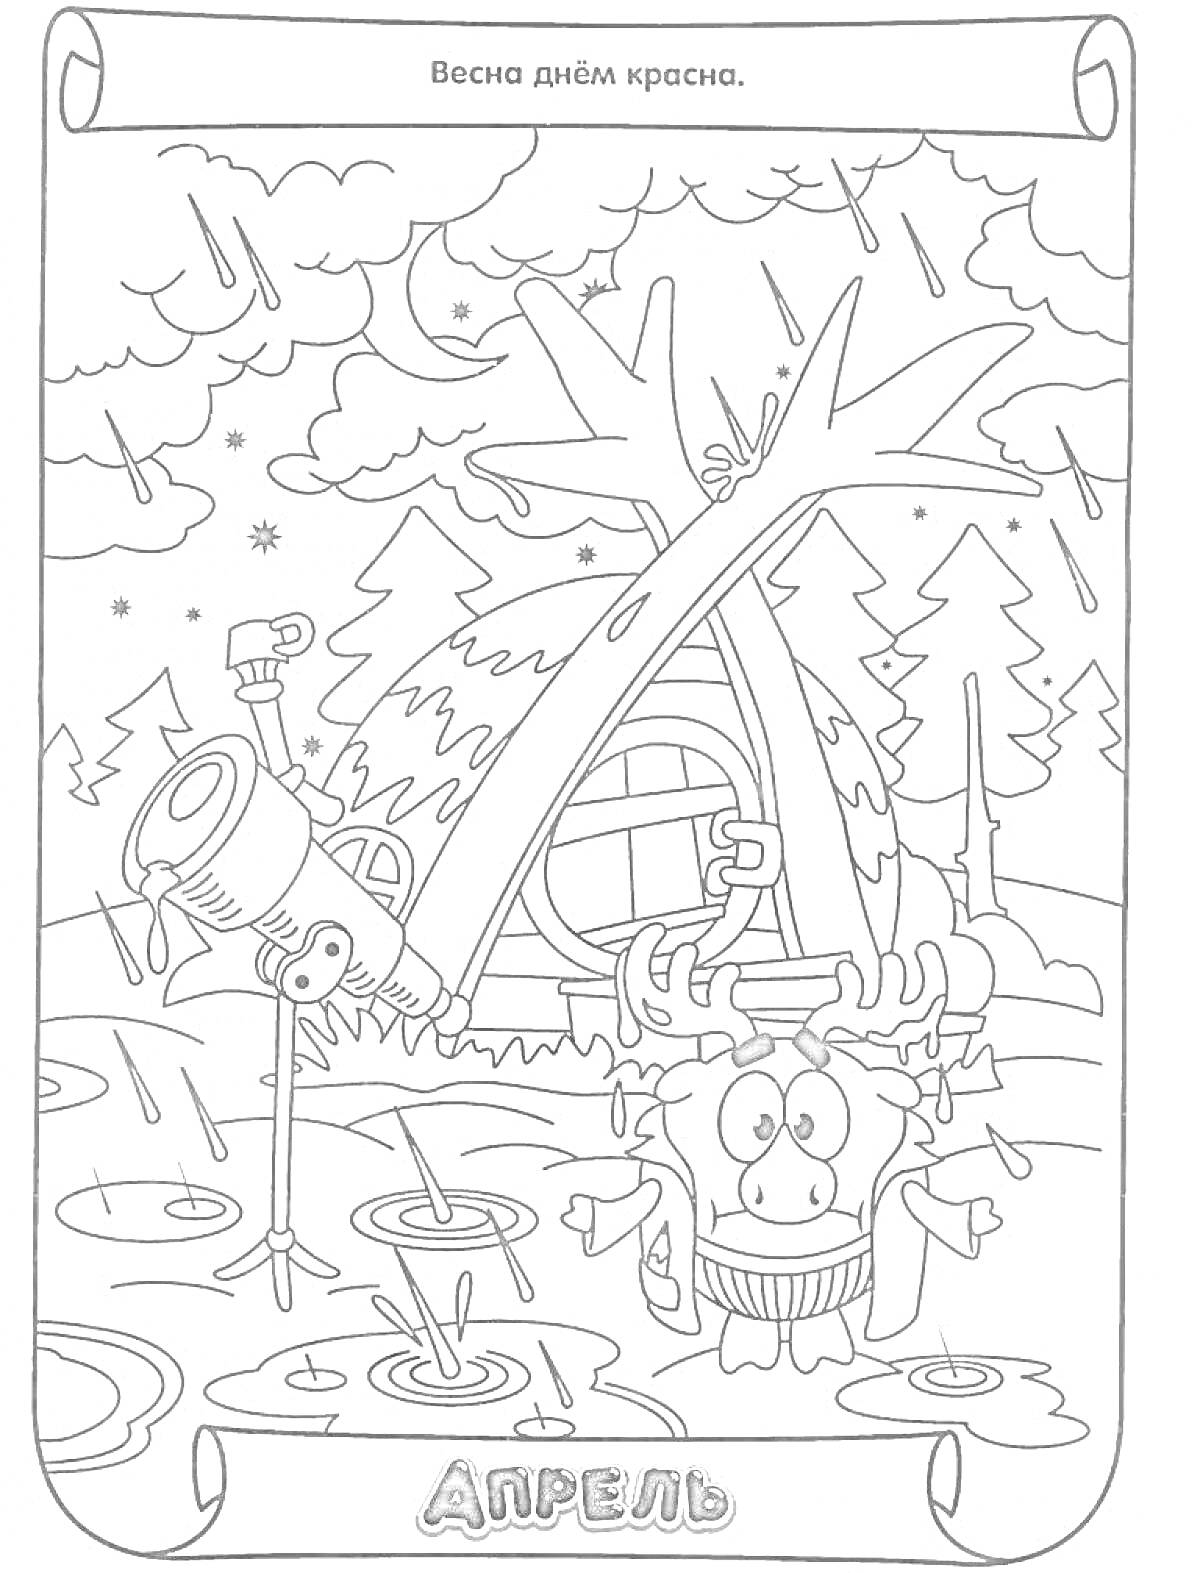 Раскраска Апрельский дождь, телескоп, домик, лужи, лес, мультипликационный персонаж